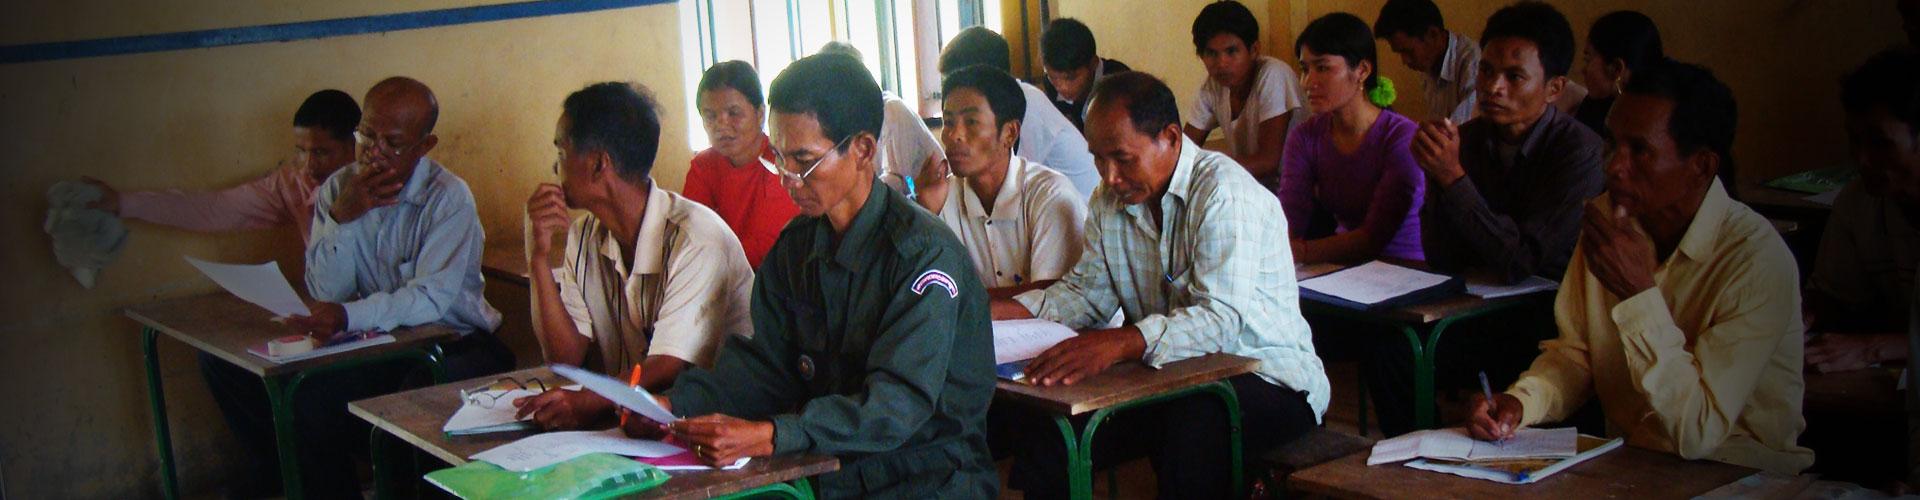 Programma di volontariato a sostegno delle ONG in Cambogia